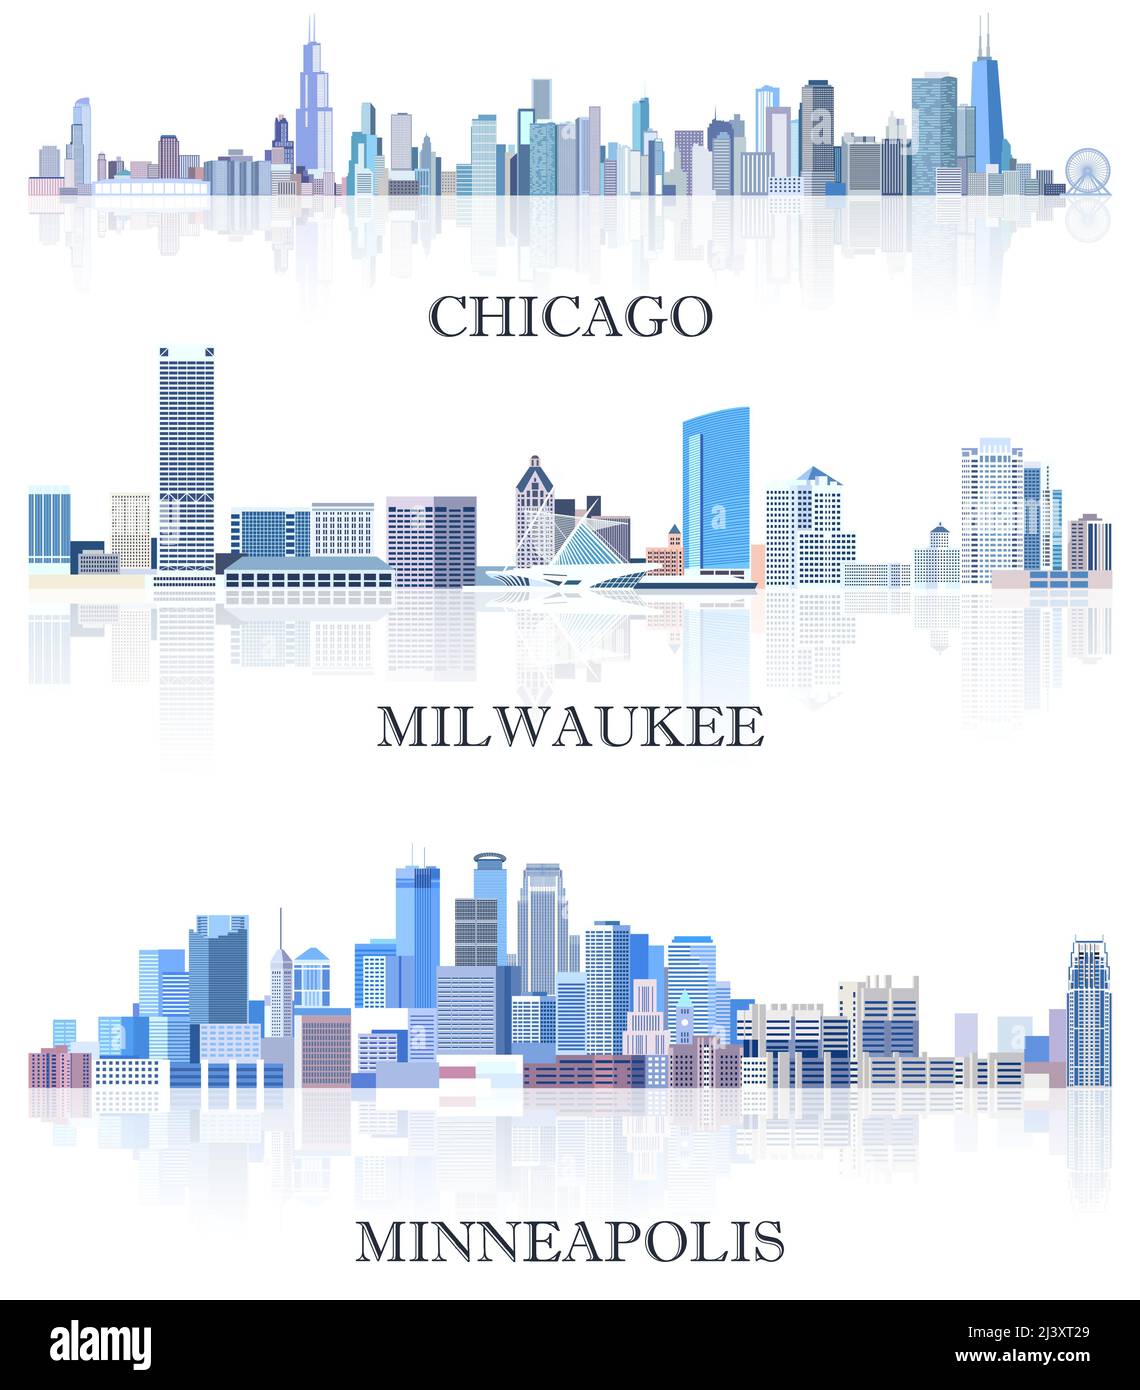 Collezione vettoriale di paesaggi urbani degli Stati Uniti: Chicago, Milwaukee, Minneapolis skylines in tinte di colore blu. Сrystal stile estetico Illustrazione Vettoriale